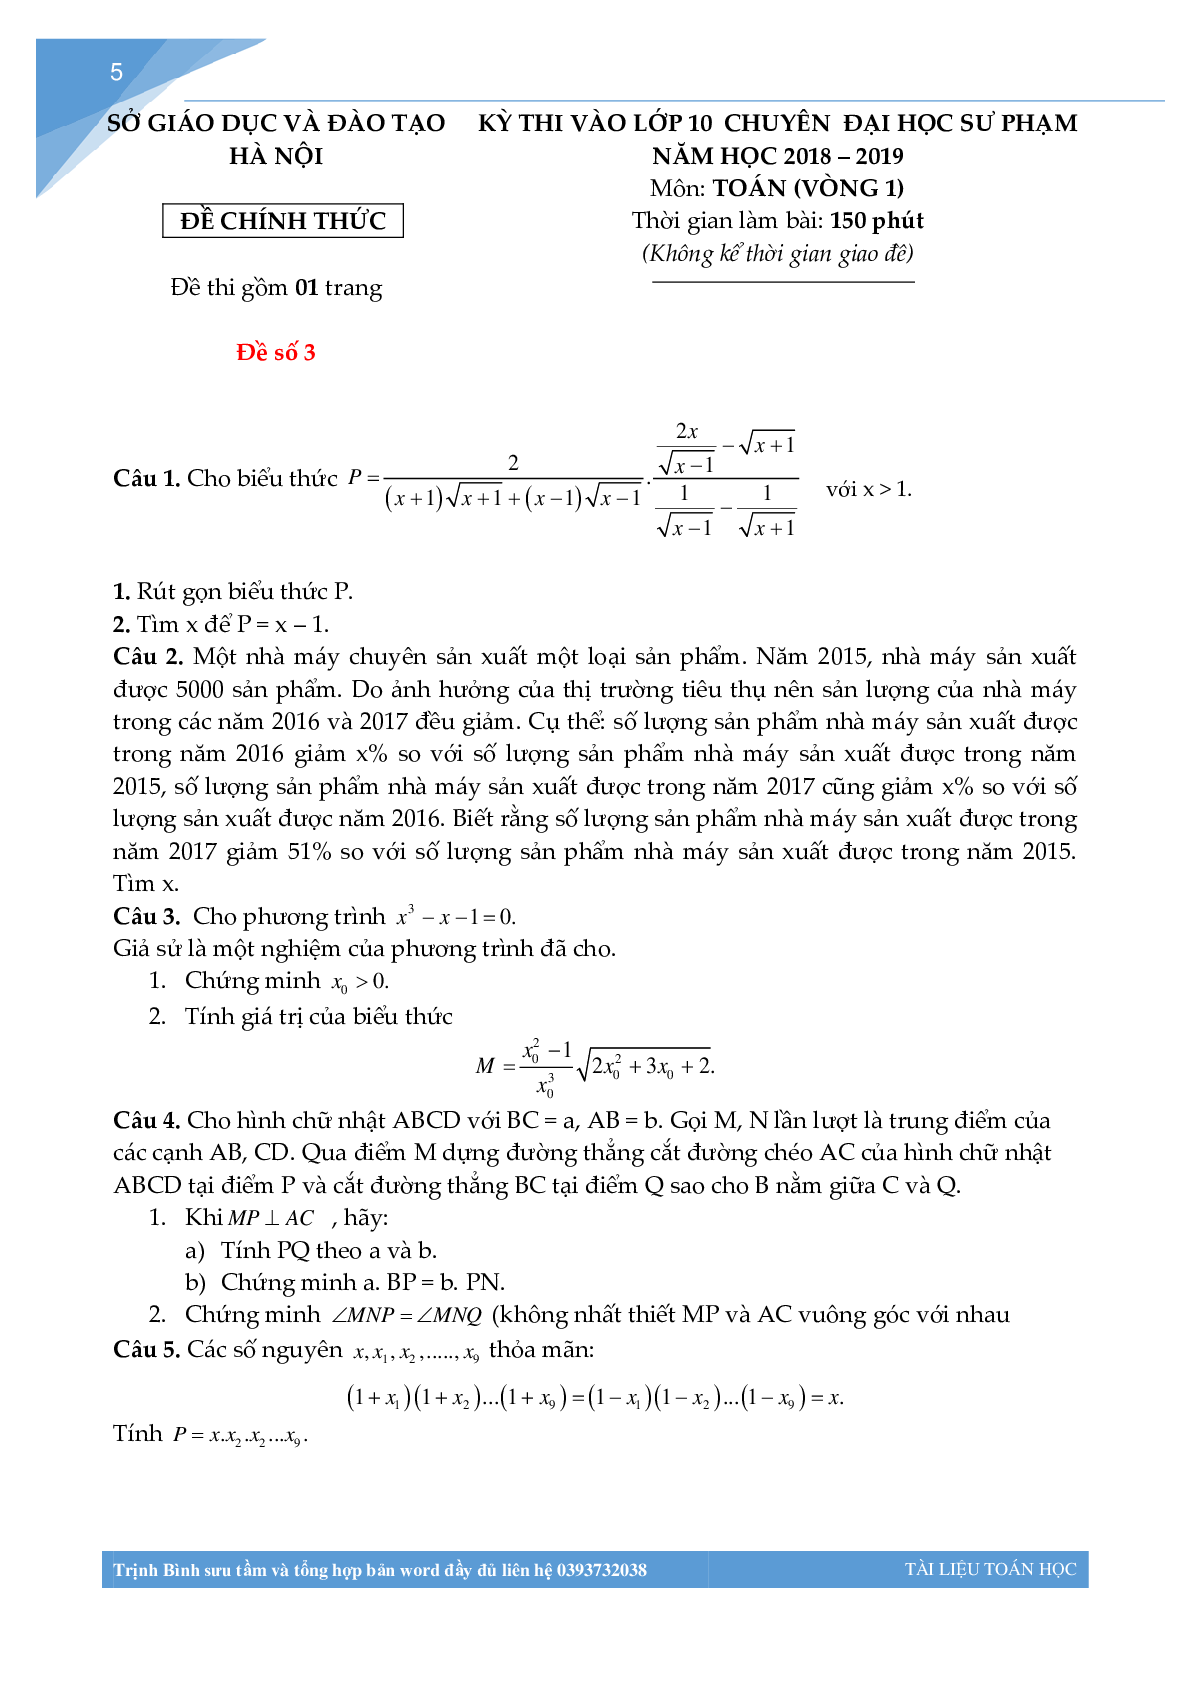 Bộ đề thi toán vào lớp 10 chuyên đại học sư phạm Hà Nội (trang 4)